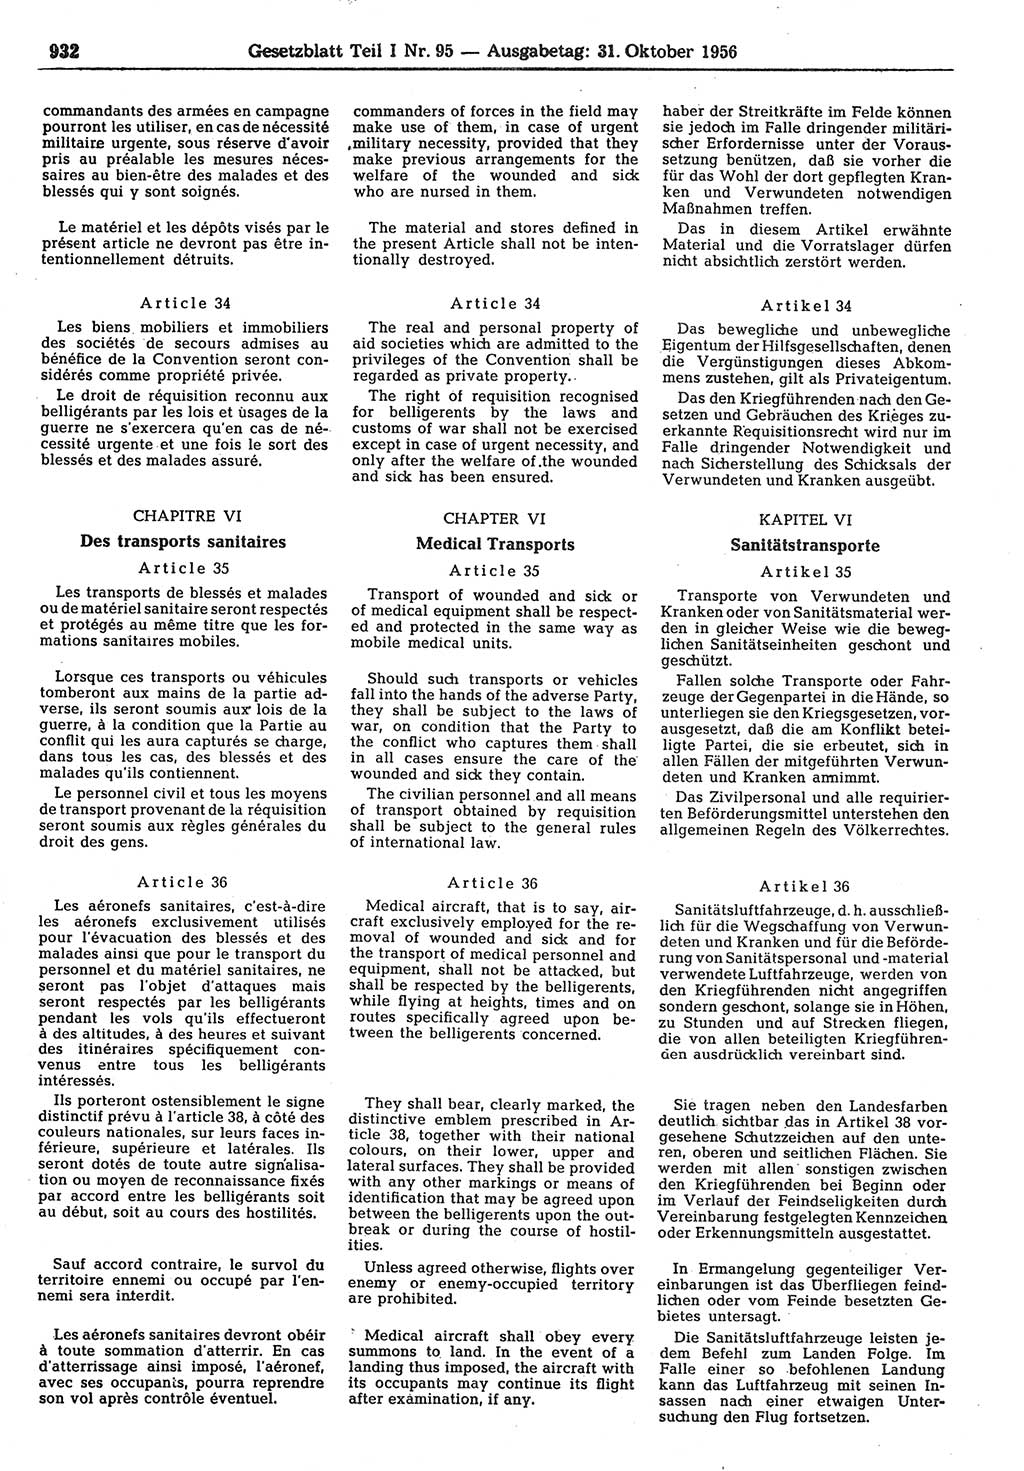 Gesetzblatt (GBl.) der Deutschen Demokratischen Republik (DDR) Teil Ⅰ 1956, Seite 932 (GBl. DDR Ⅰ 1956, S. 932)